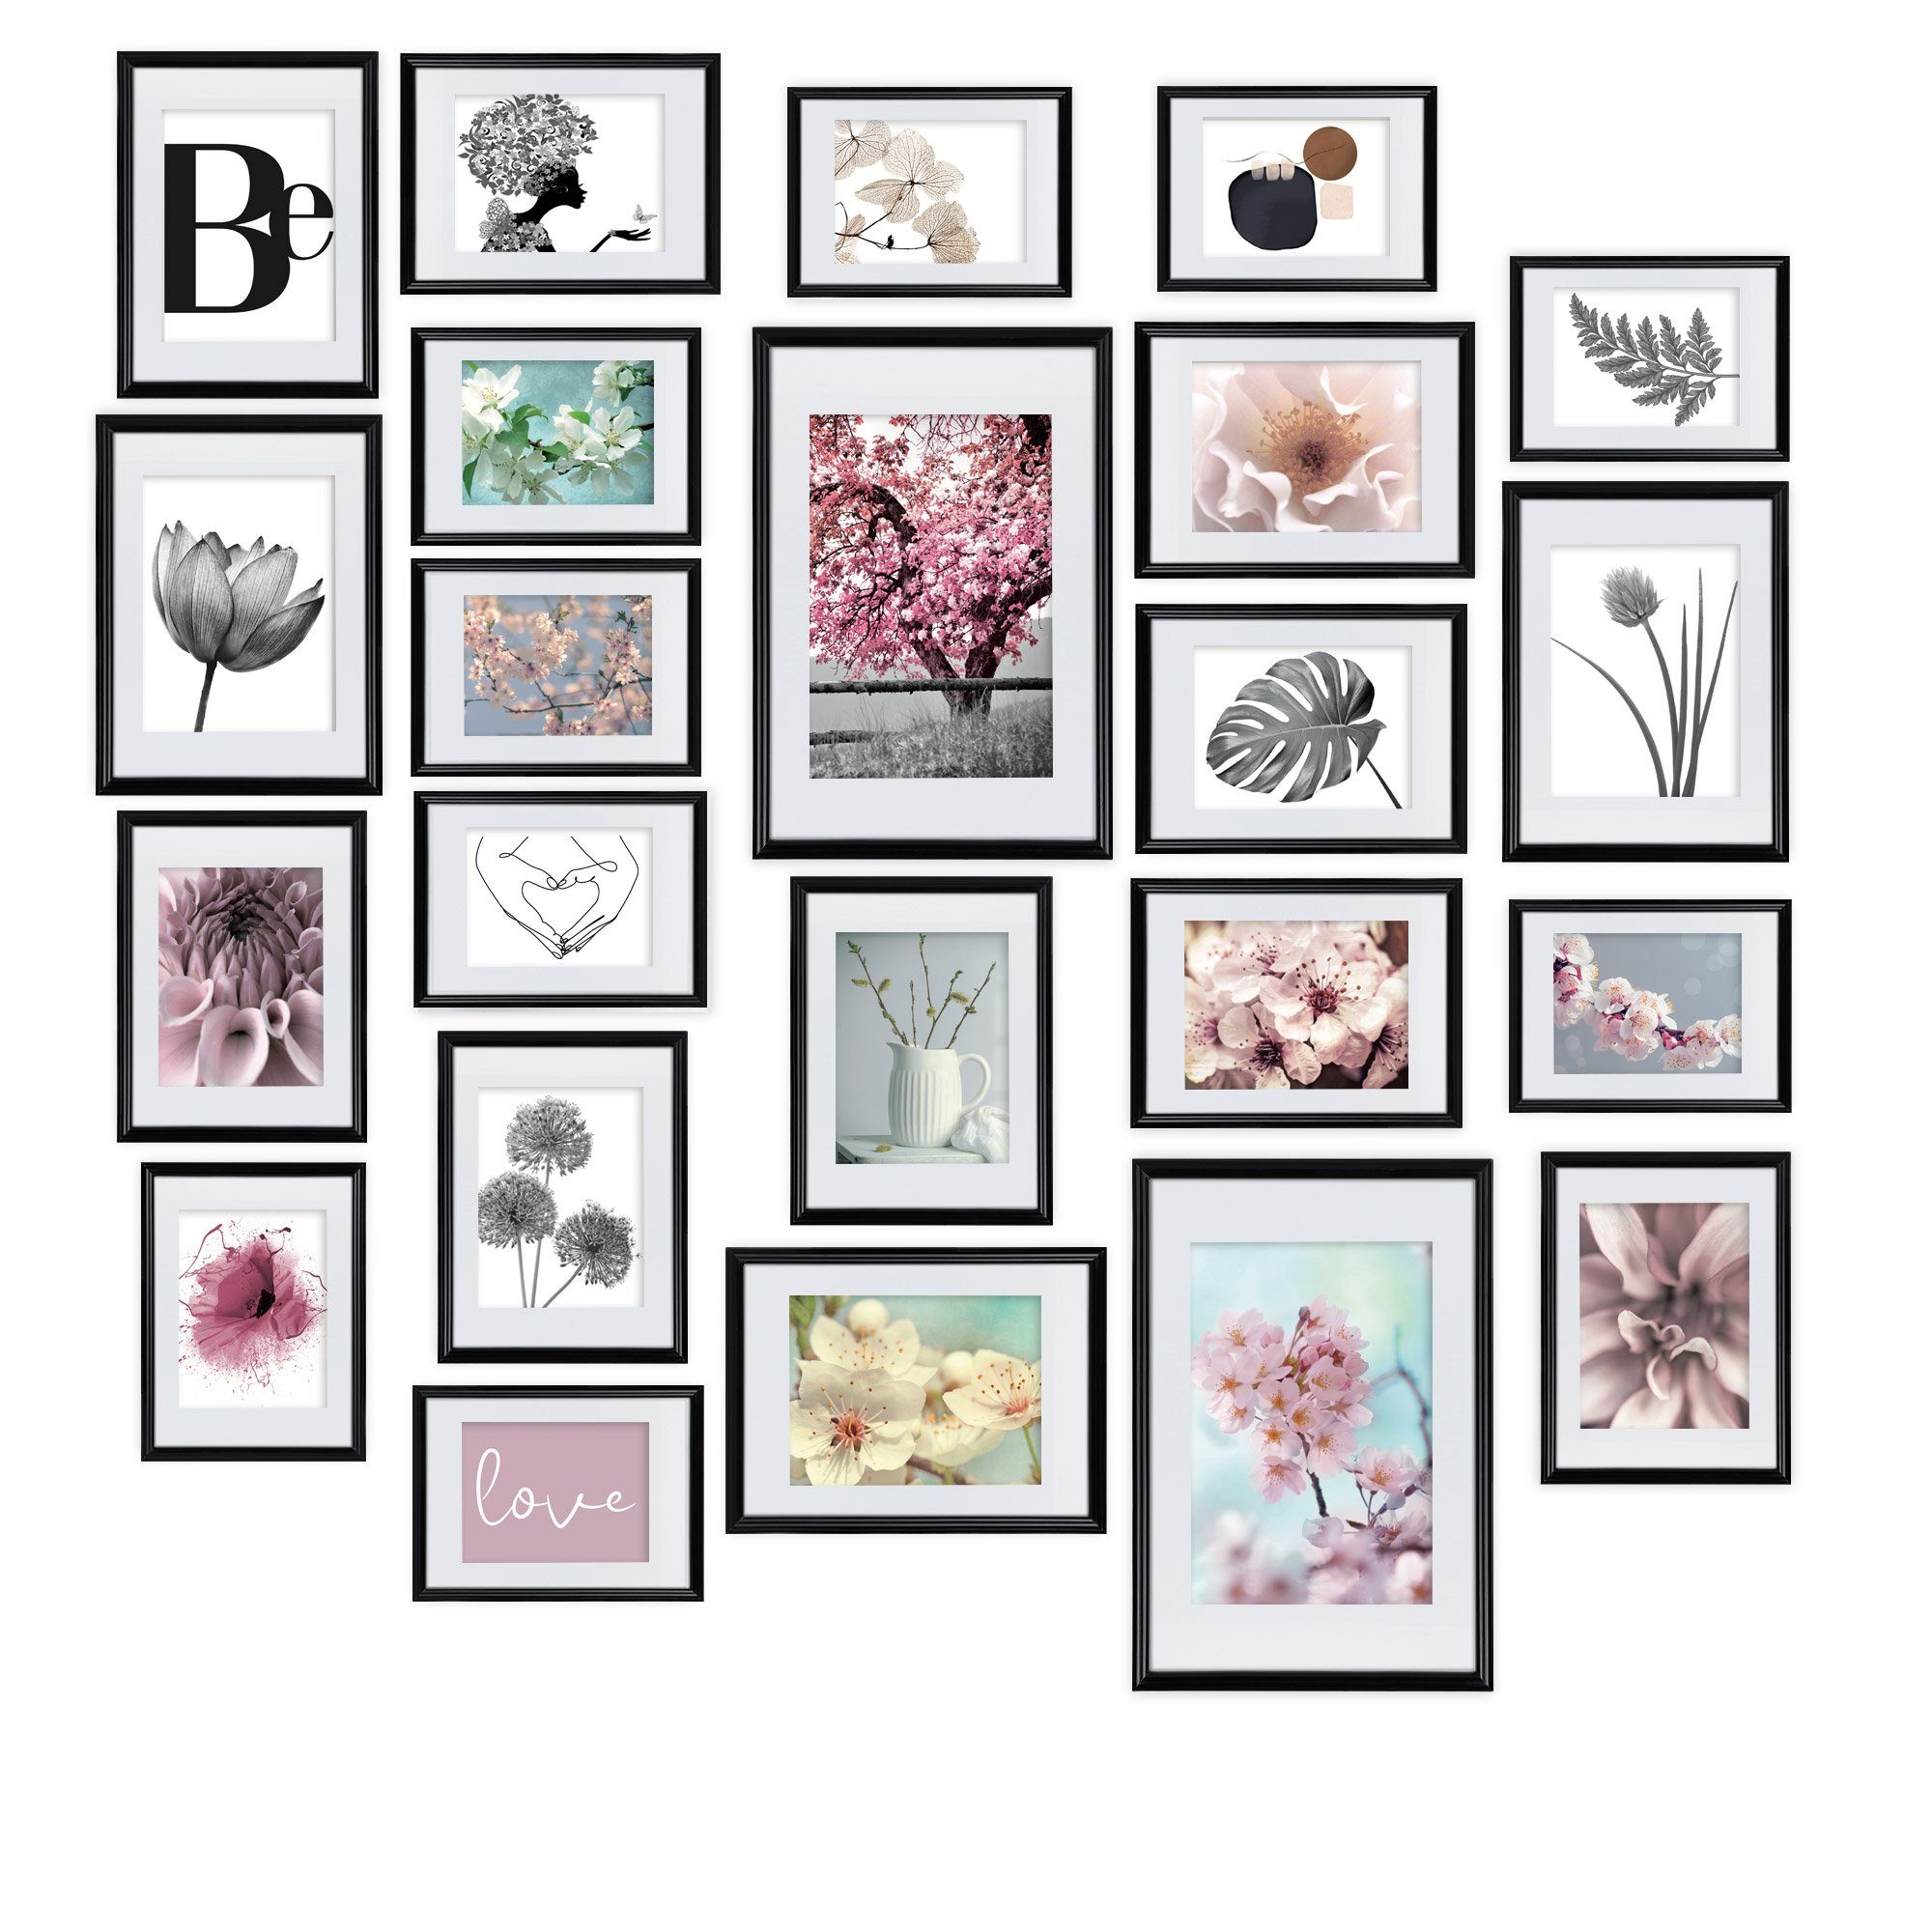 bomoe Bilderrahmen Blossom, 24er Set Fotowand Collage Fotorahmen mit Passepartout Schwarz